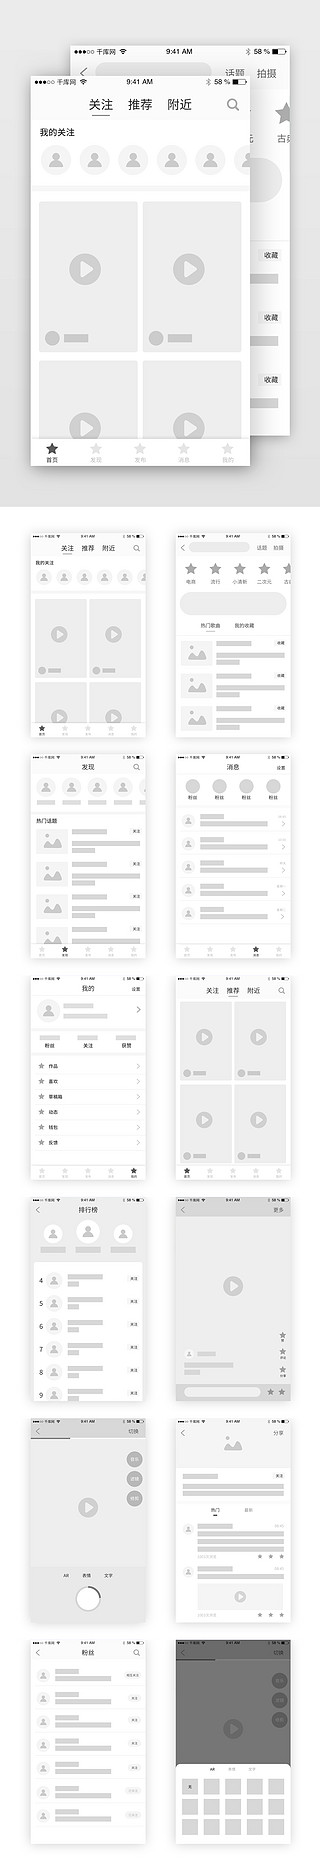 排列排版UI设计素材_短视频直播排版模板原型图